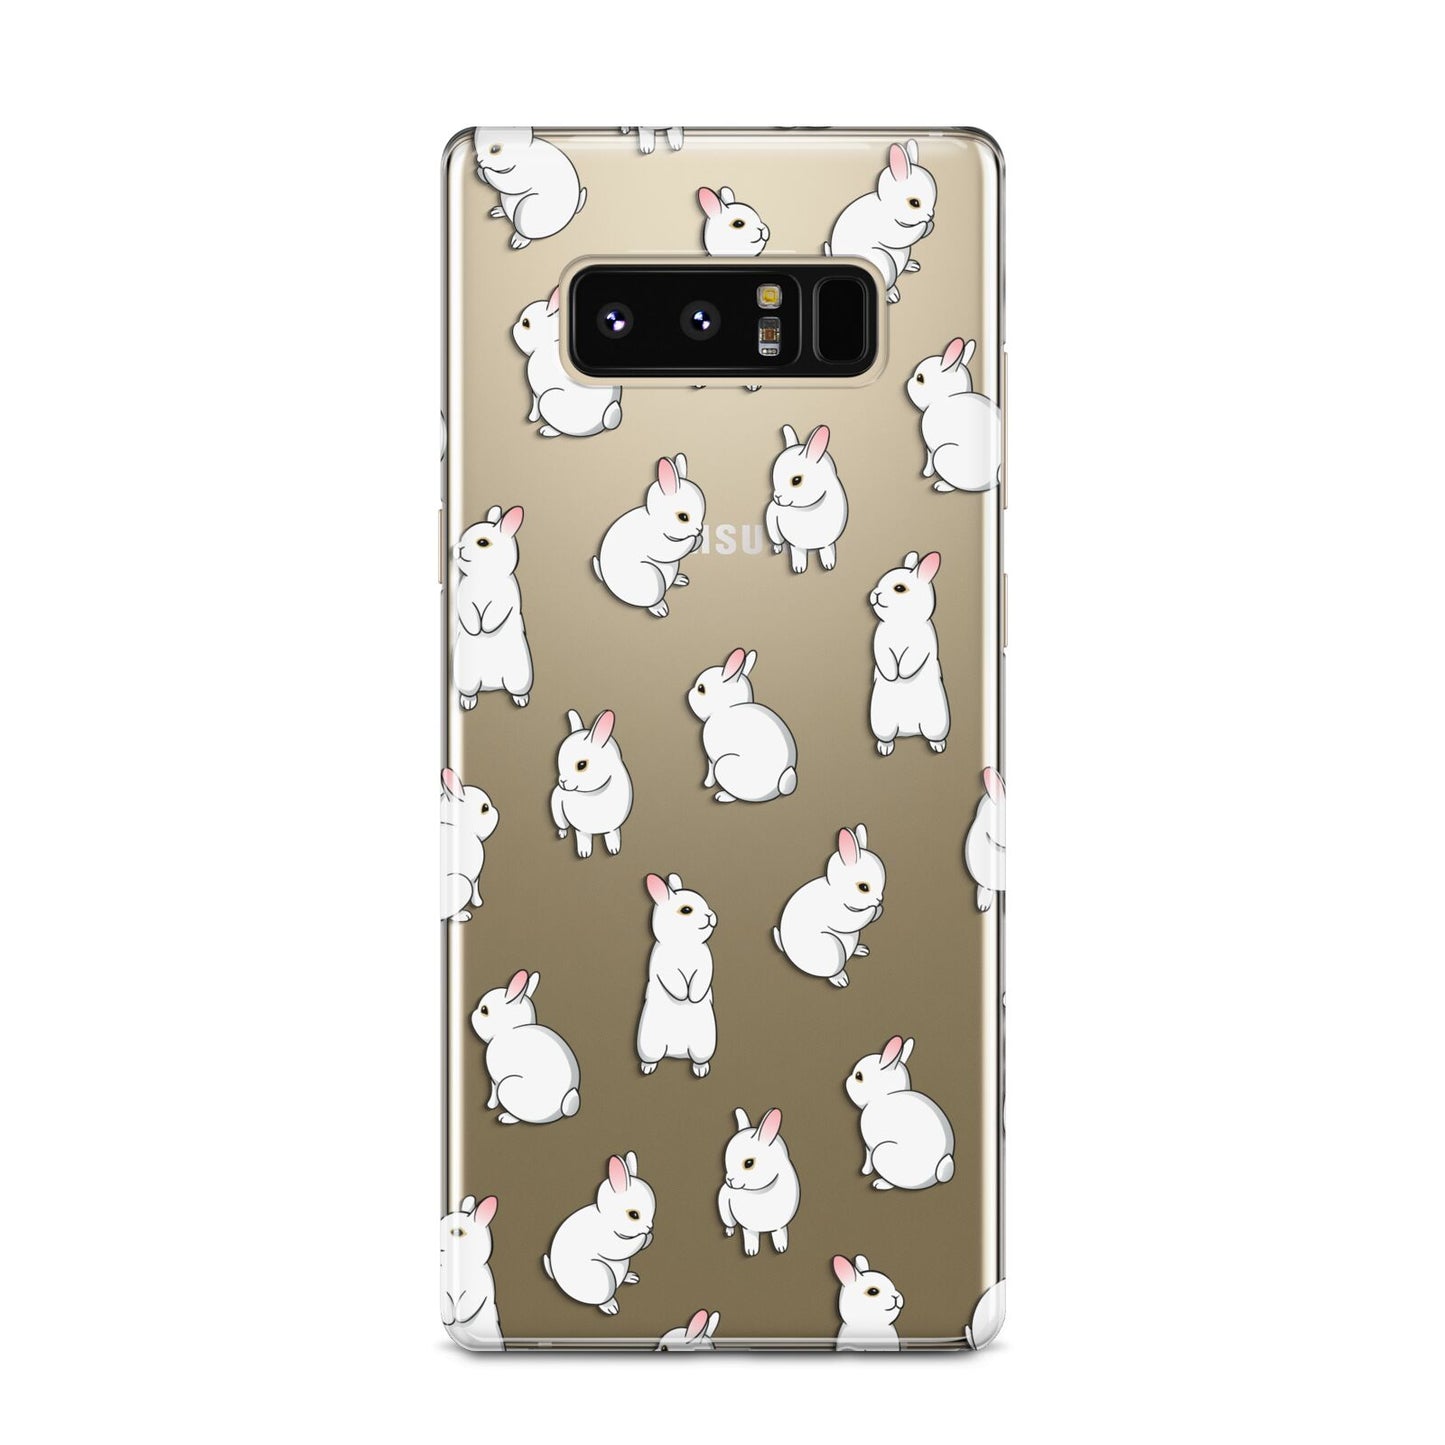 Bunny Rabbit Samsung Galaxy Note 8 Case